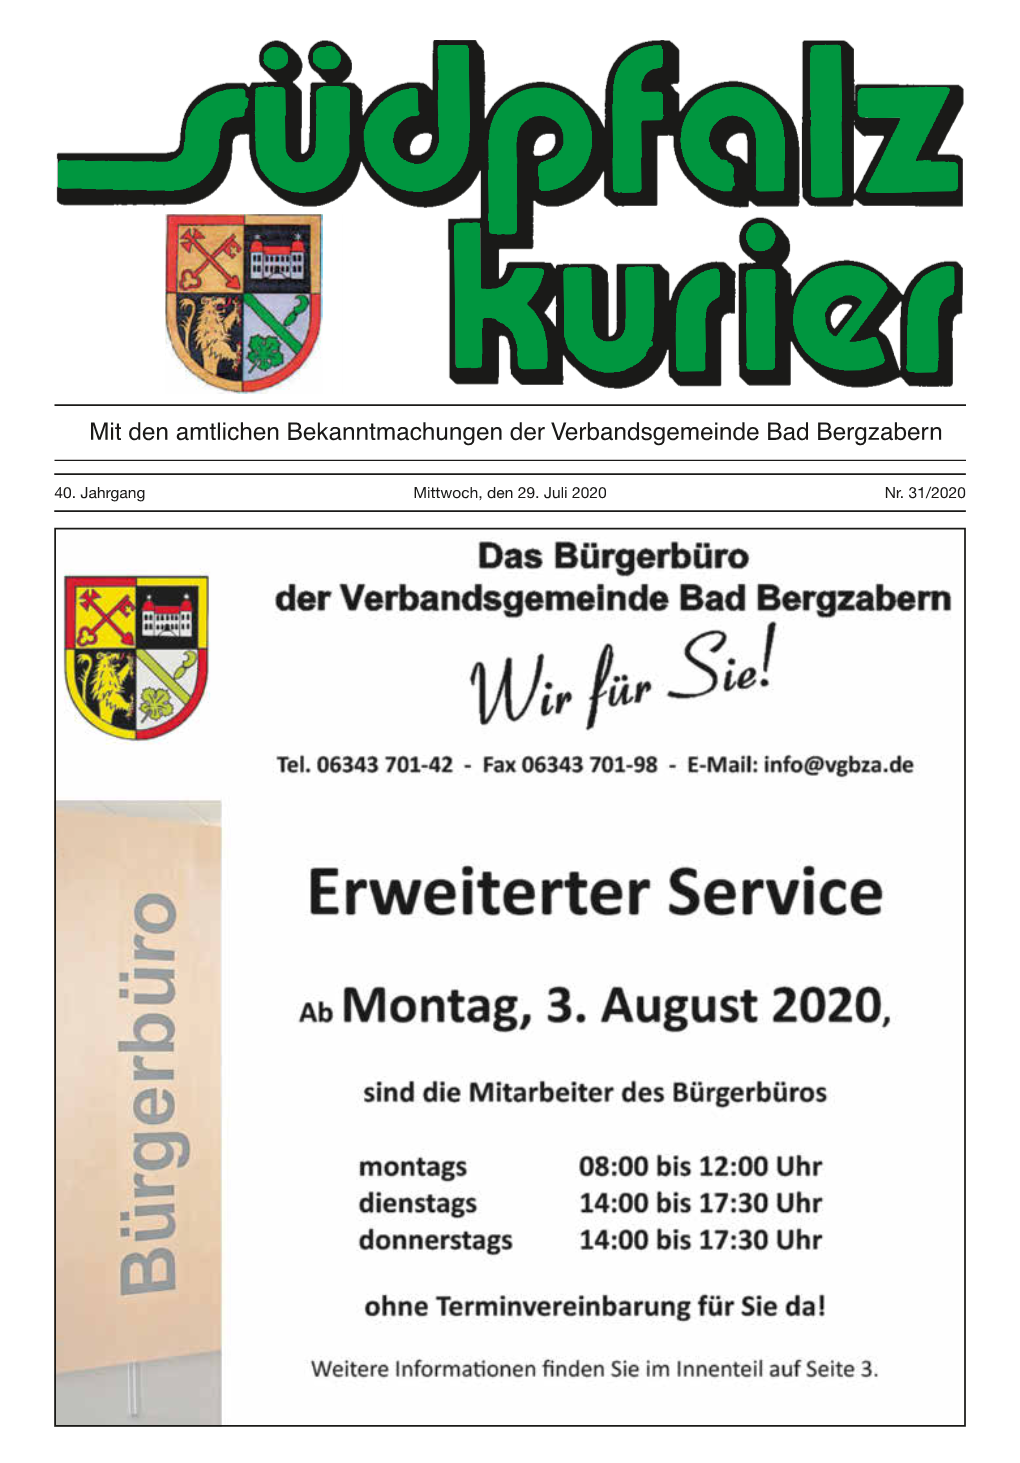 40. Jahrgang Mittwoch, Den 29. Juli 2020 Nr. 31/2020 Bad Bergzabern, Den 29.07.2020 - 2 - Südpfalz Kurier - Ausgabe 31/2020 Auf Einen Blick